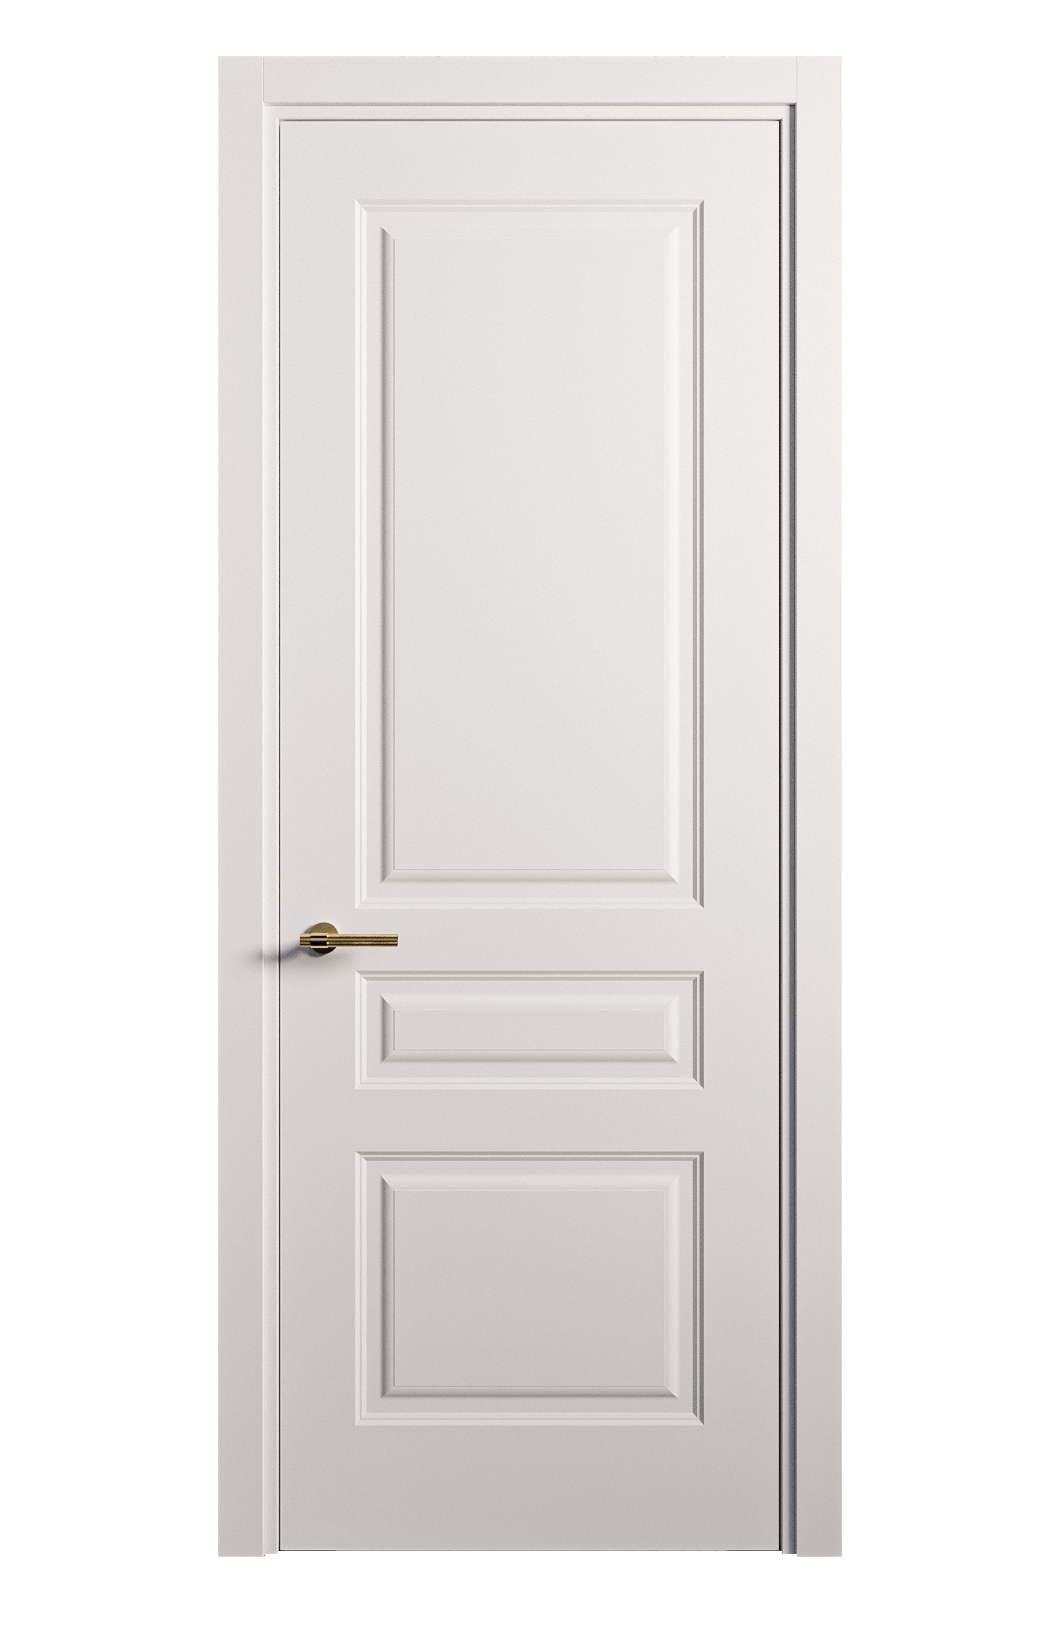 Межкомнатная дверь Вита-2 глухая эмаль ral 9003 26343